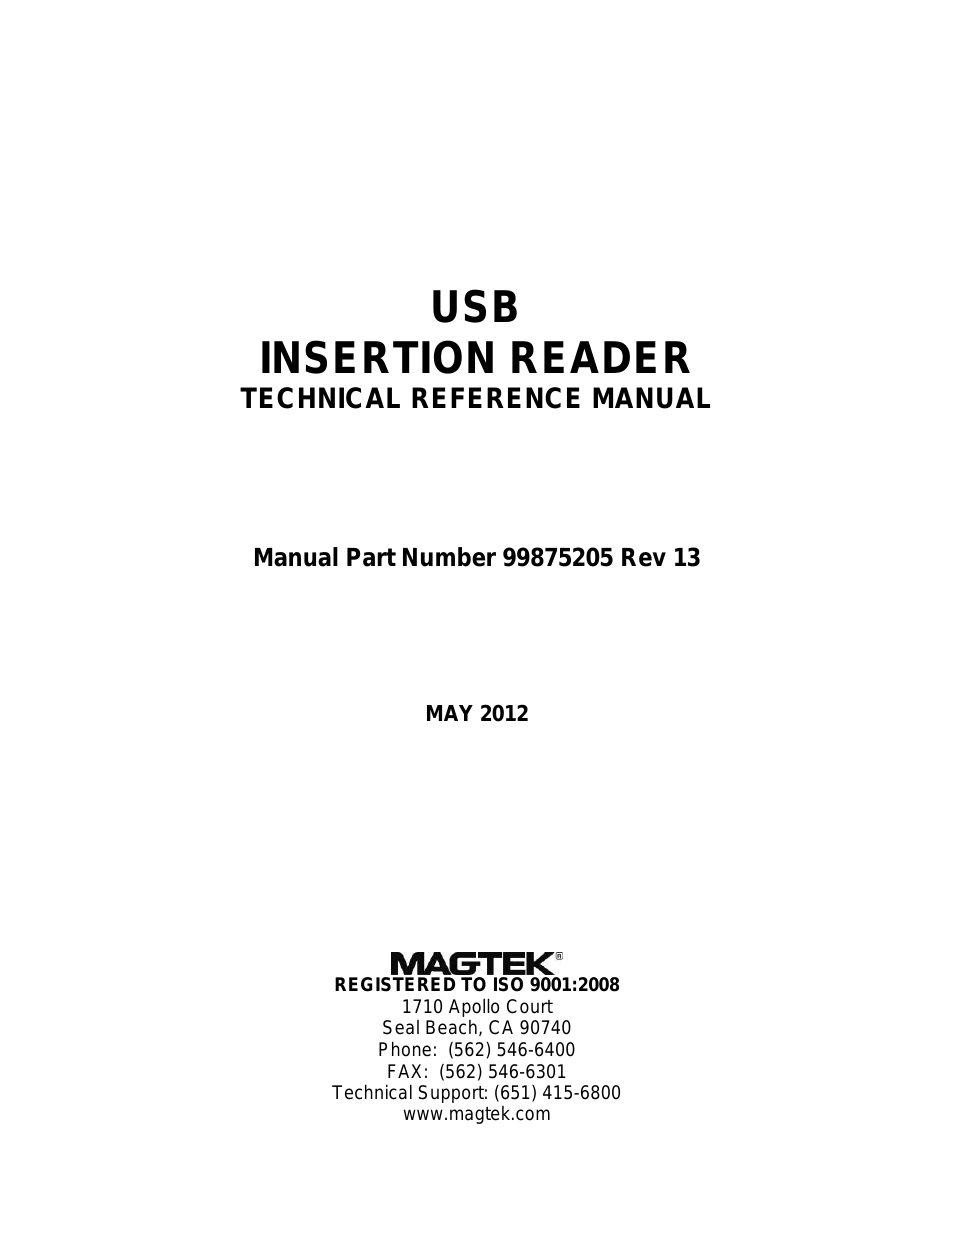 USB INSERTION READER